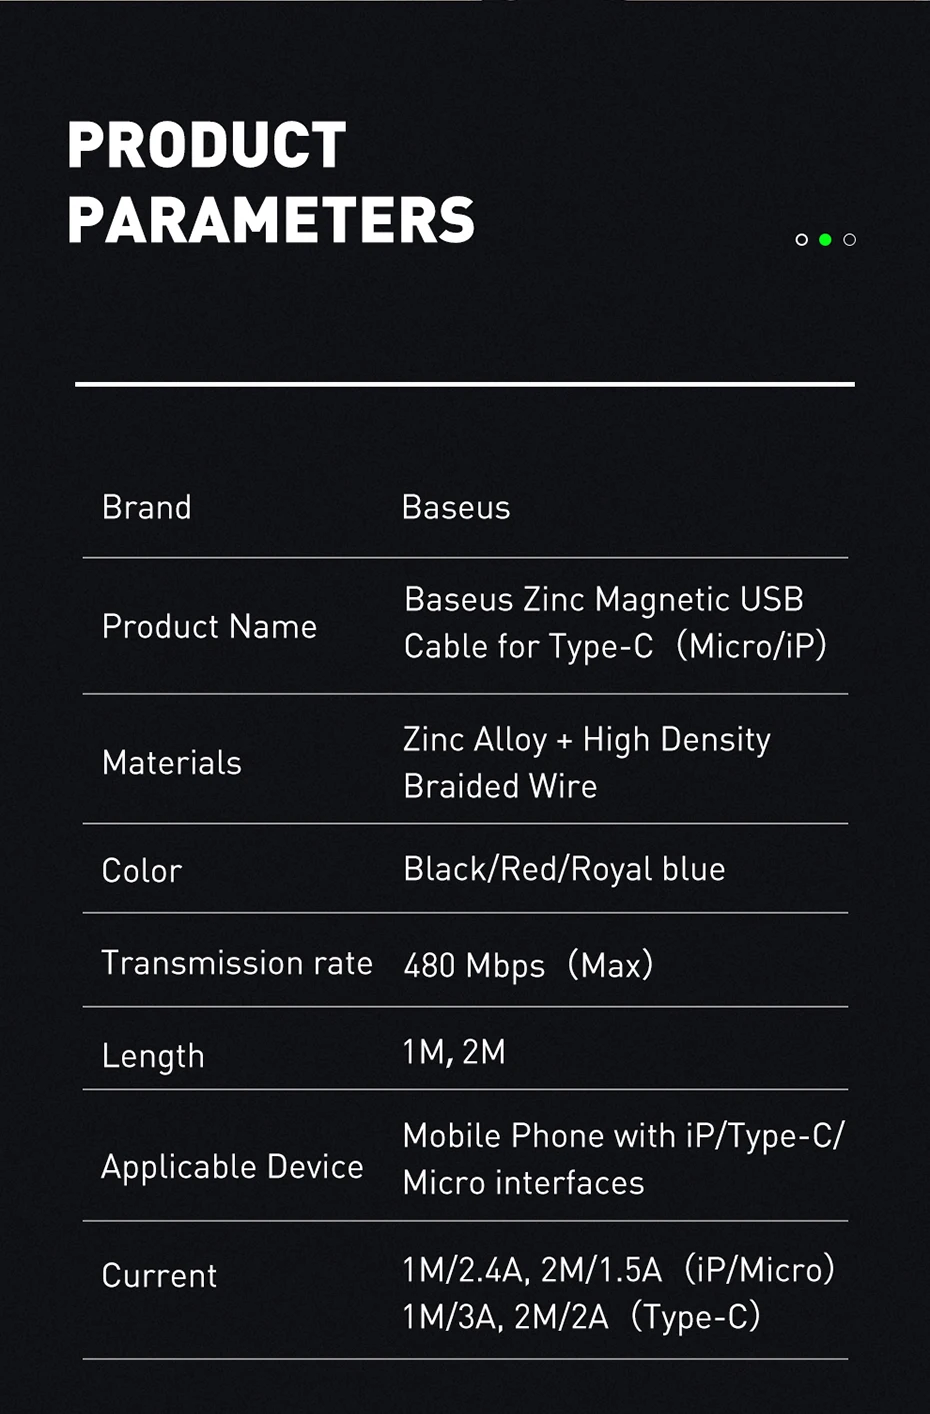 Baseus Магнитный кабель Micro USB type-C для samsung s9 iPhone Xr, магнитный usb-кабель для зарядки, адаптер для мобильного телефона, usb-кабель